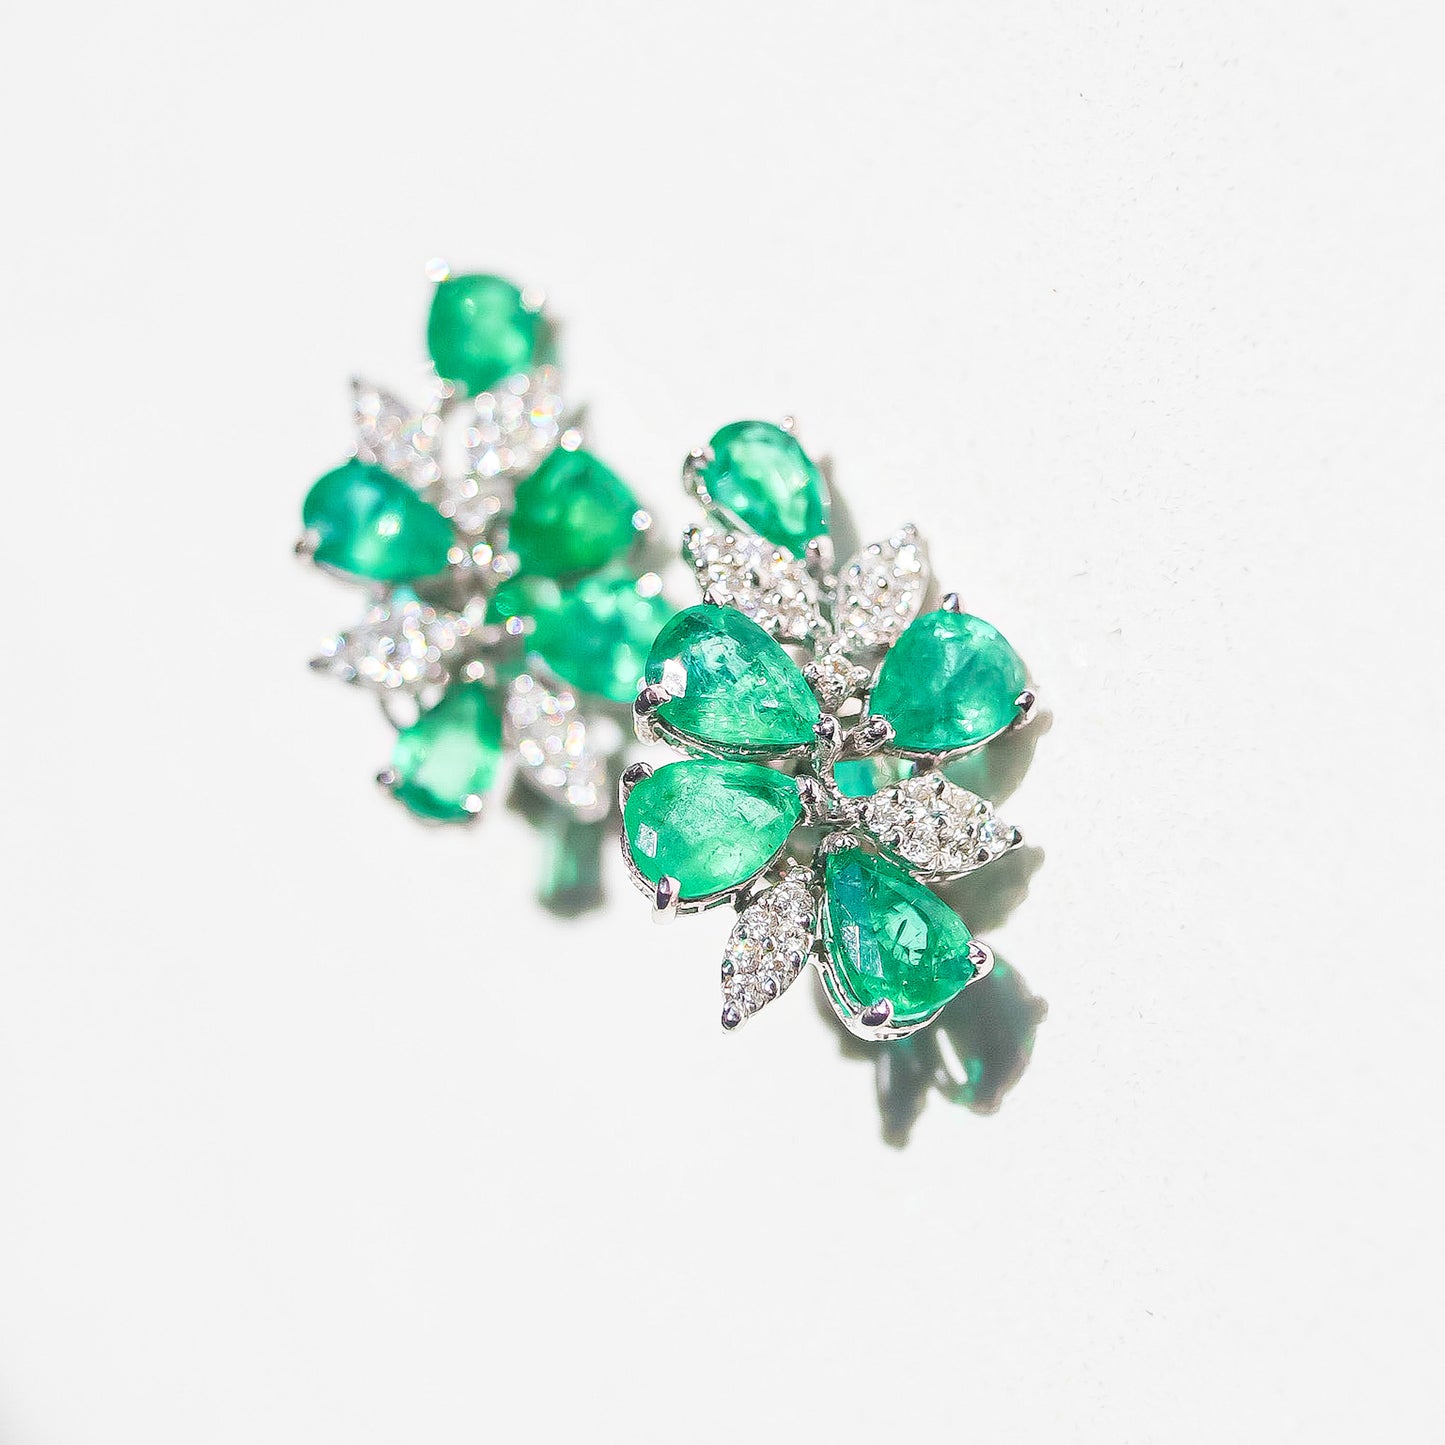 Leafs Studs Emerald Earrings